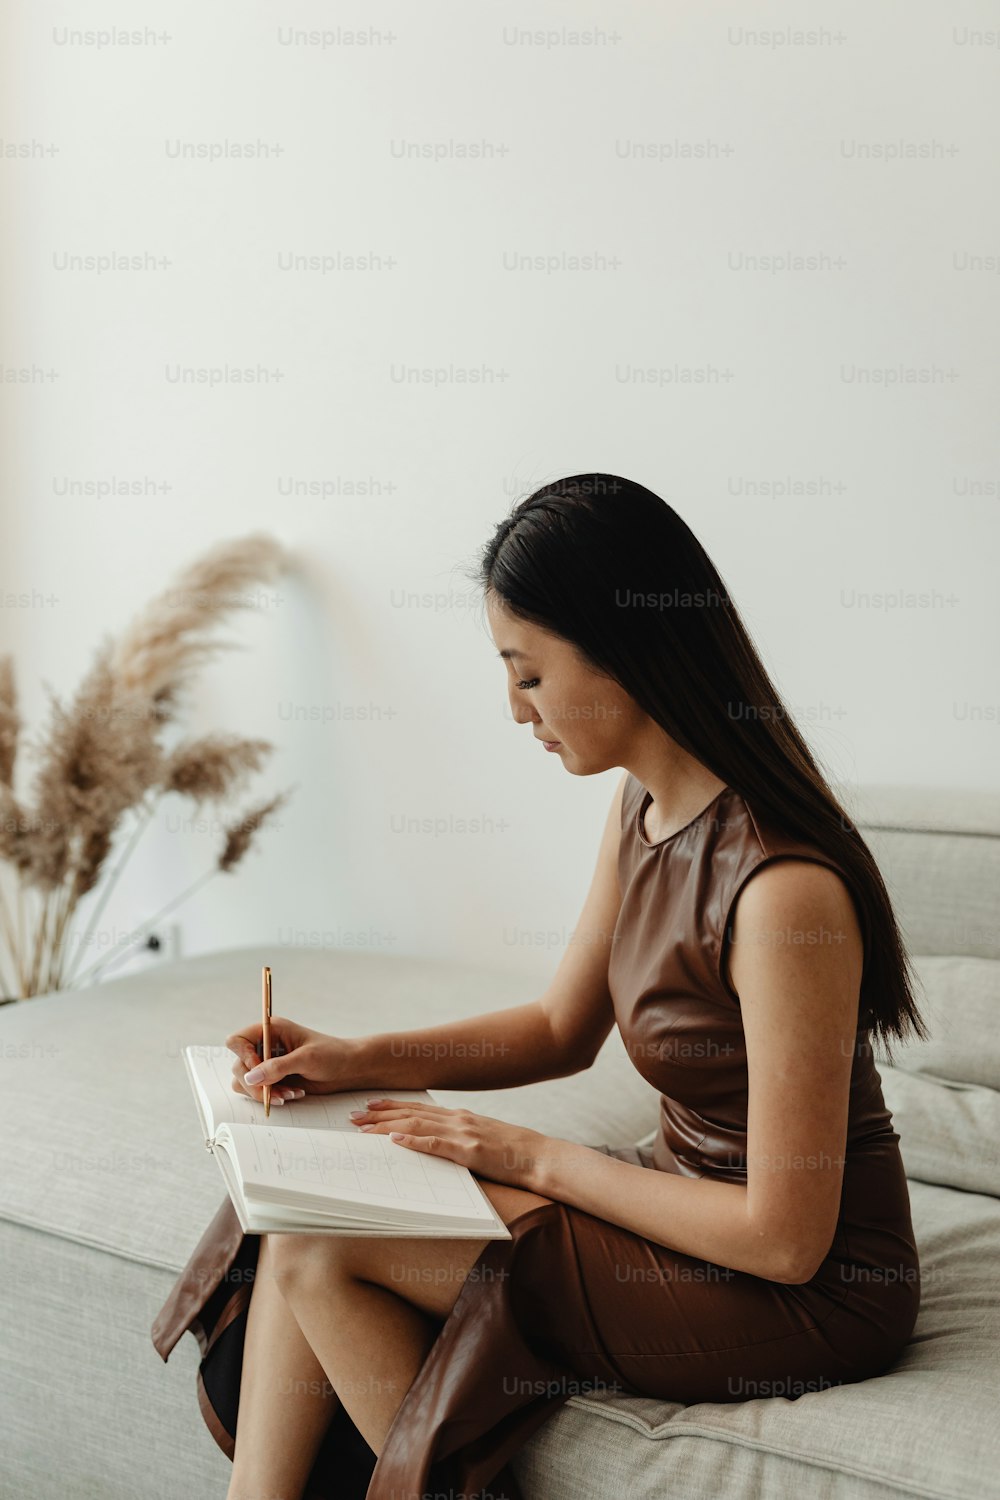 Una mujer sentada en un sofá escribiendo en un cuaderno